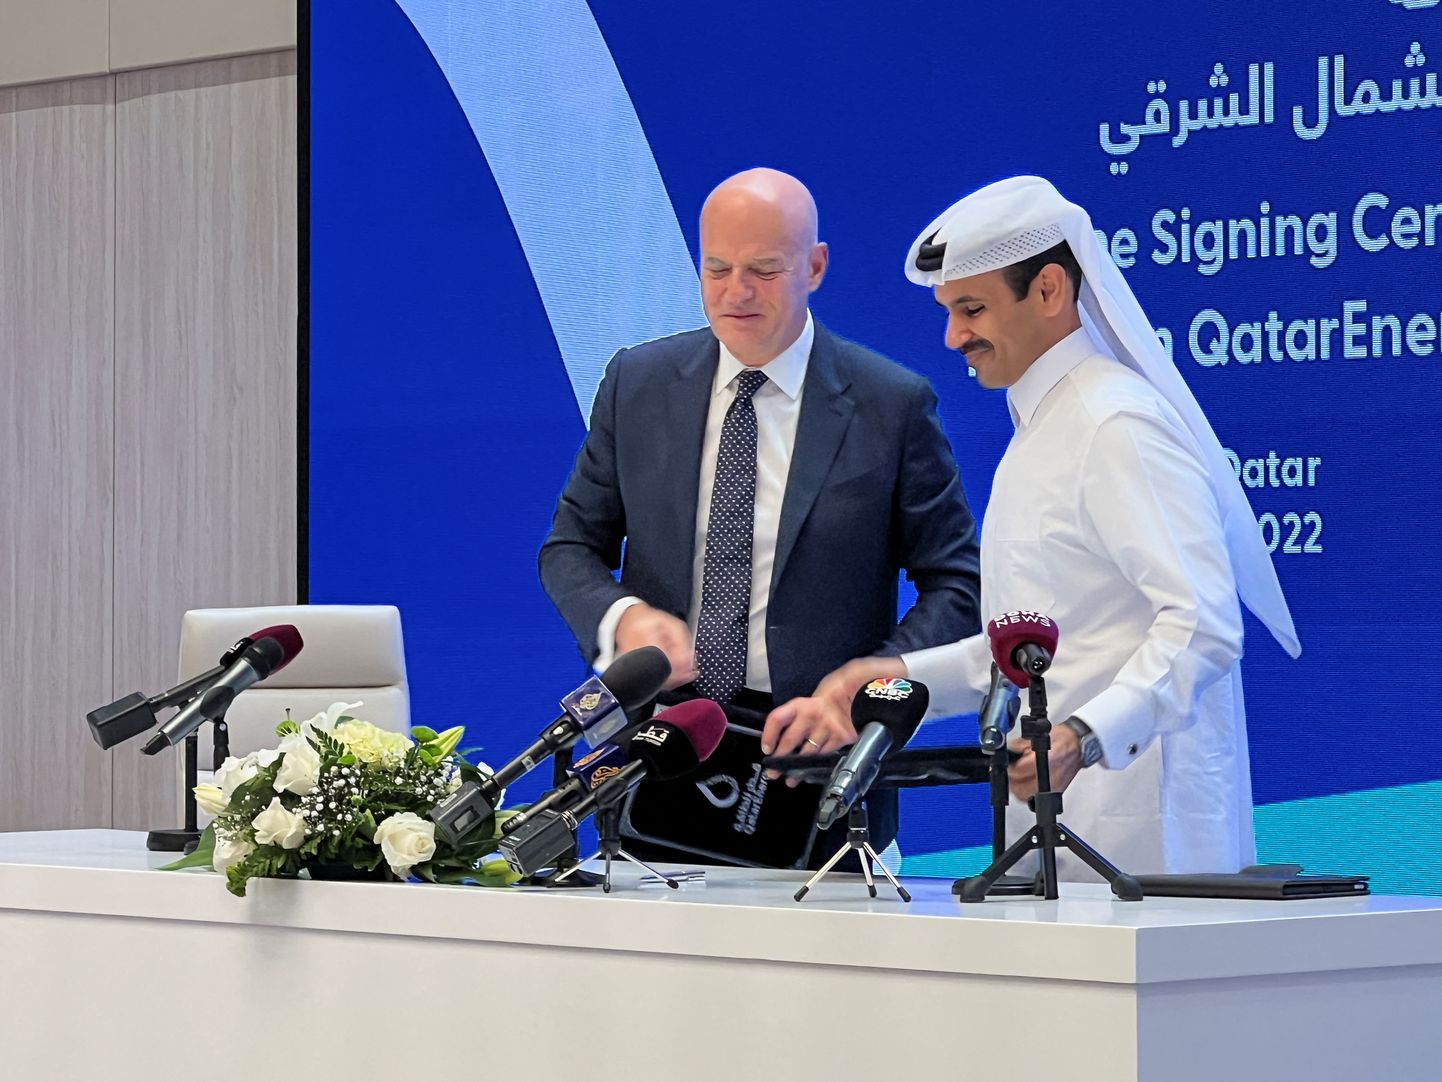 Itaalia energiakompanii Eni president Claudio Descalzi ja Qatari energeetikaminister ning QatarEnergy juht Saad al-Kaabi allkirjastasid Dohas partnerluslepingu.